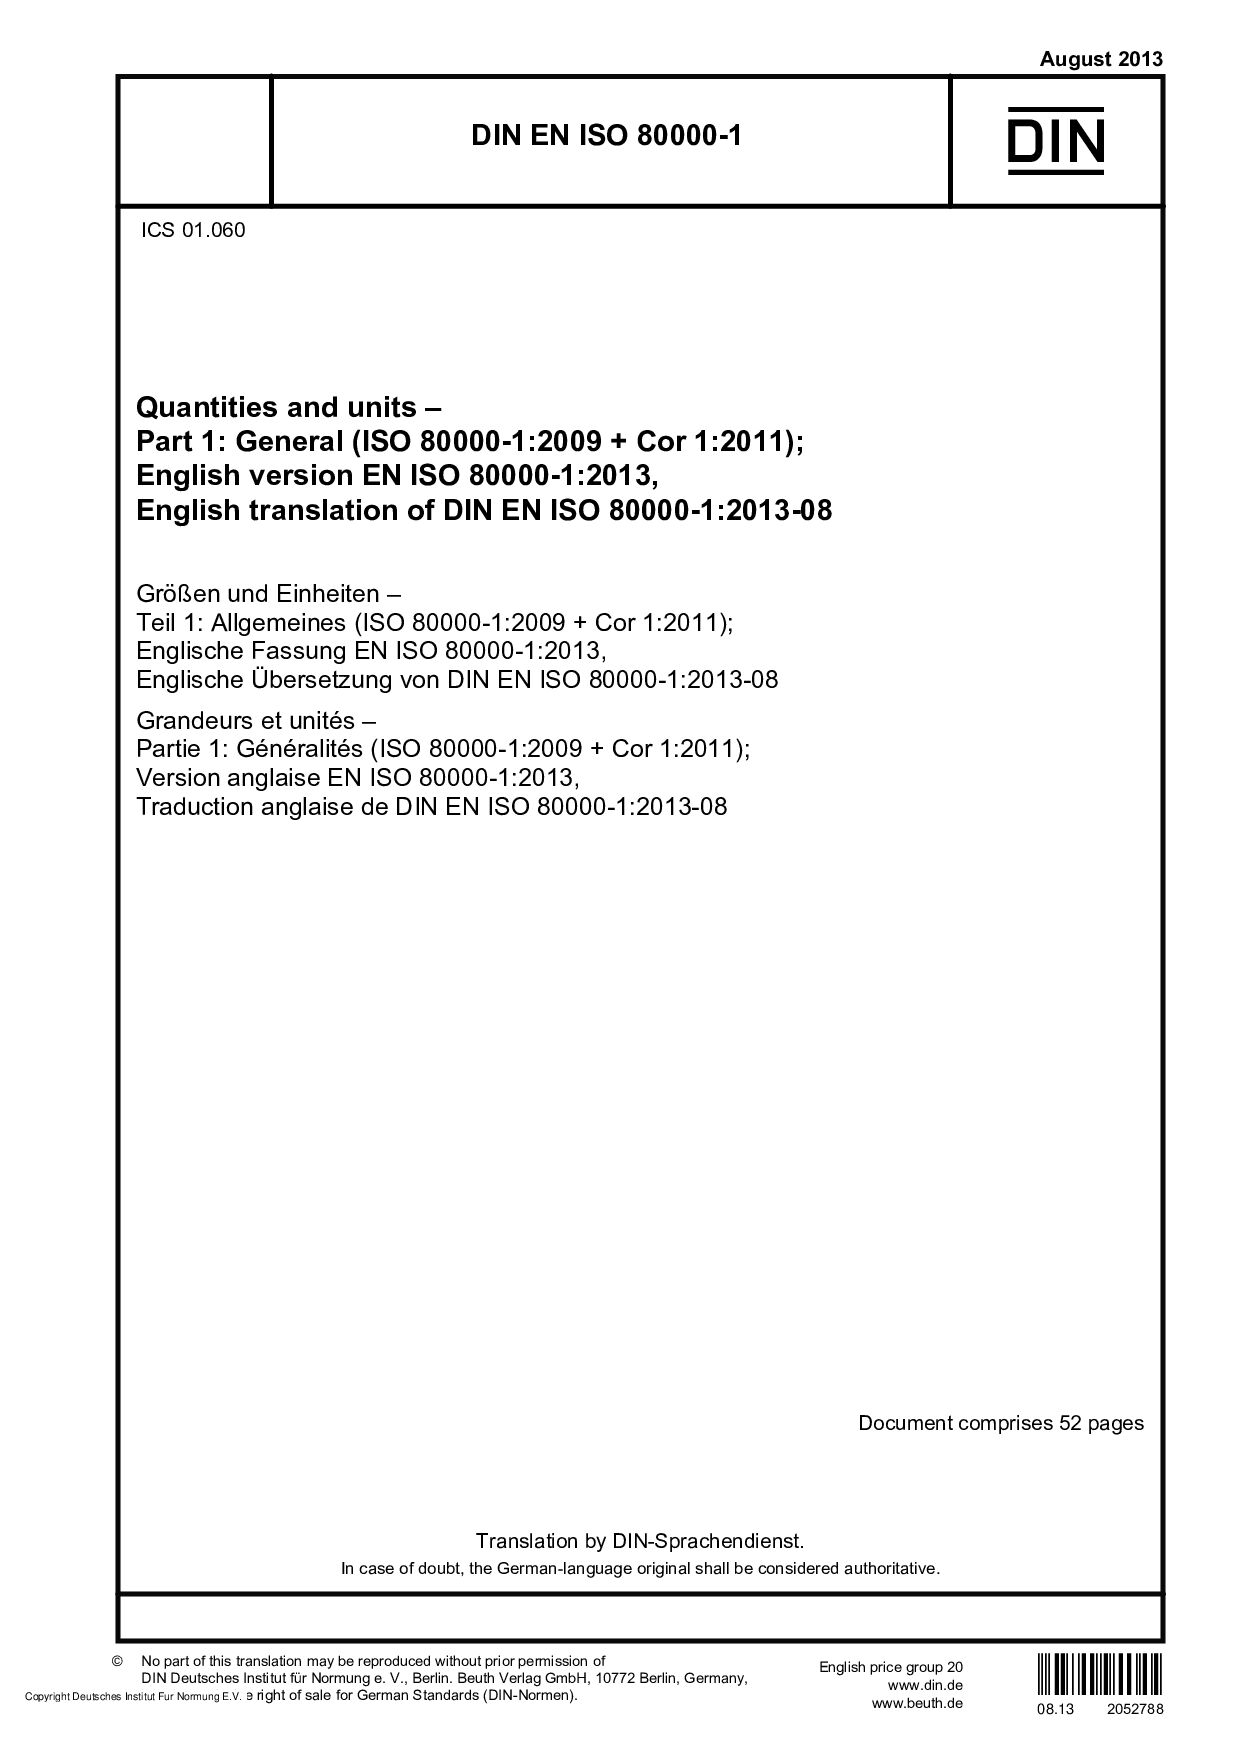 DIN EN ISO 80000-1:2013封面图